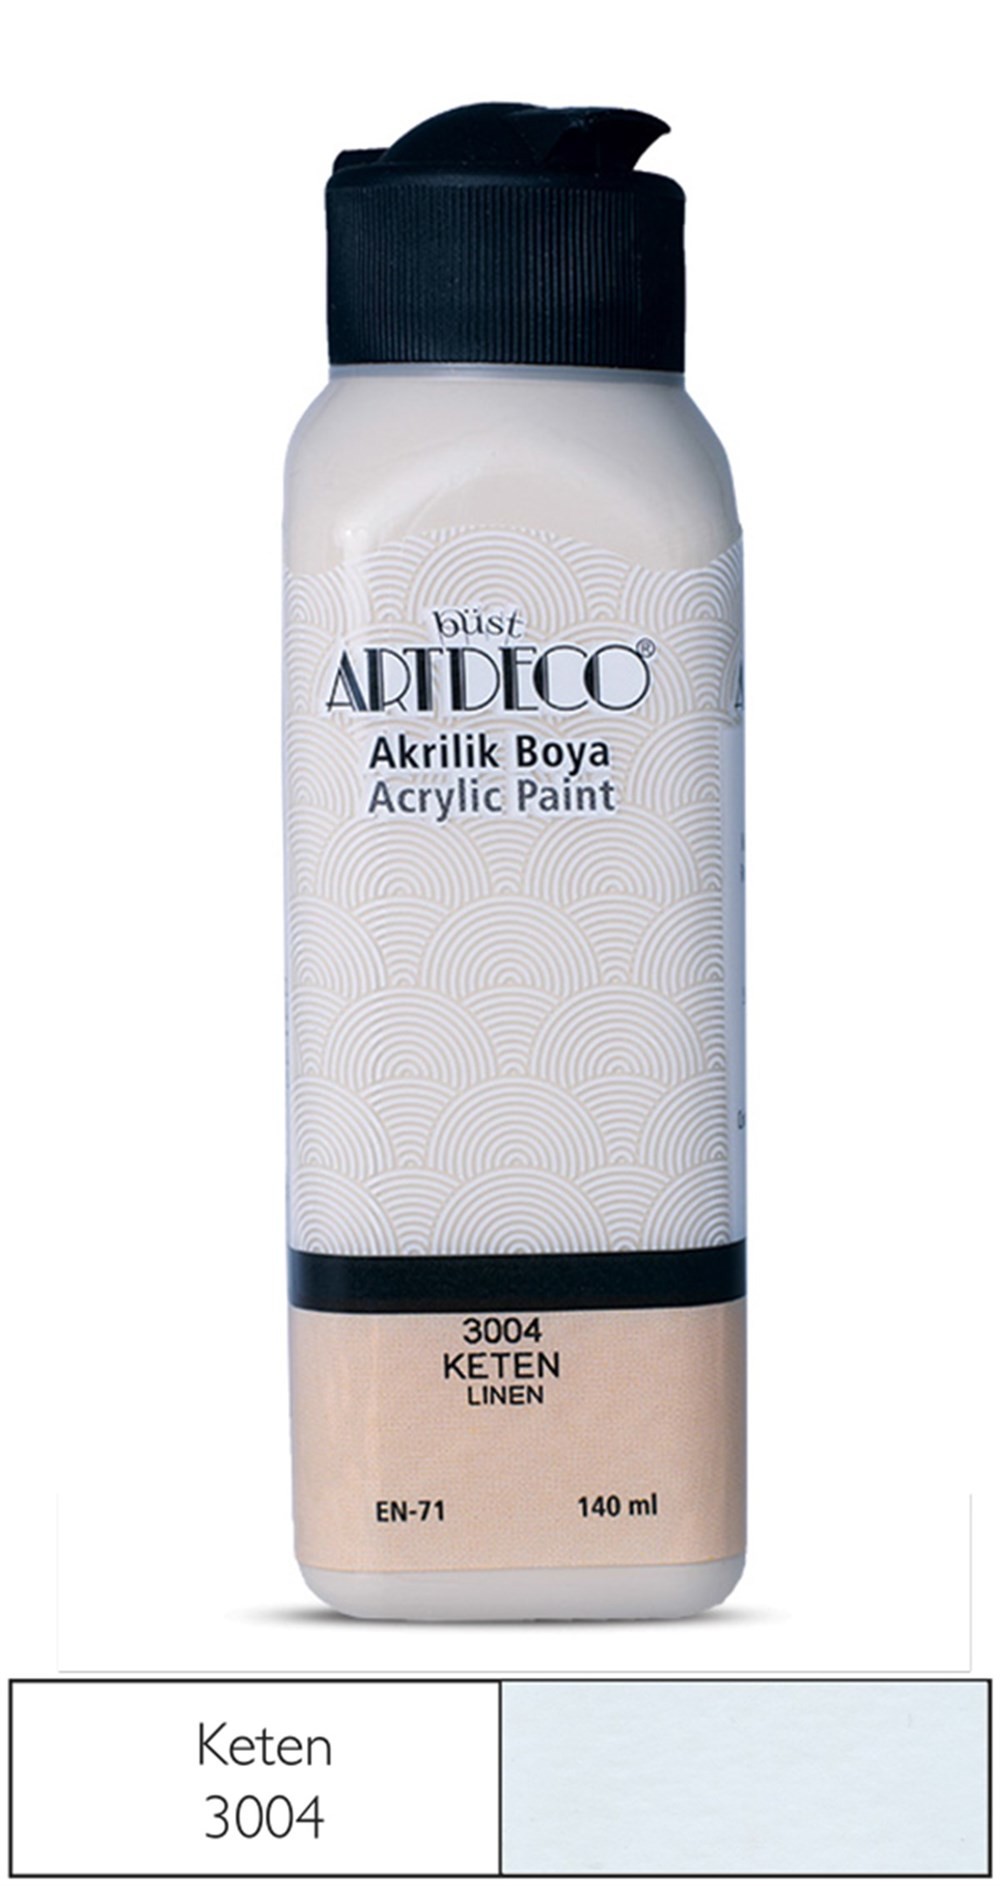 Artdeco Akrilik Boya 140 ml 3004 Keten